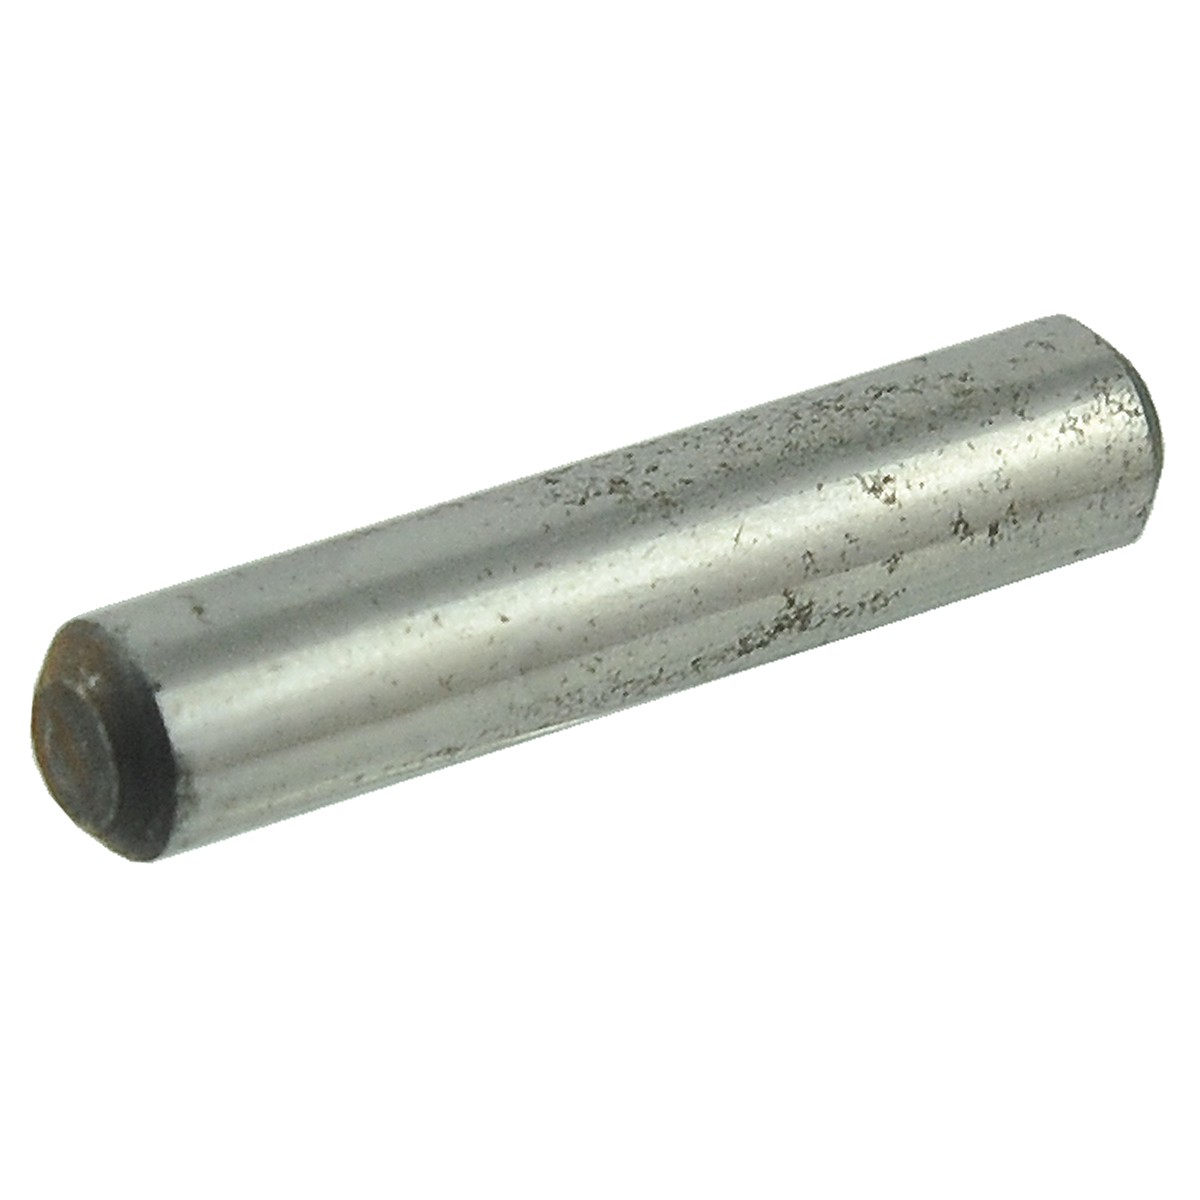 Dowel pin 30 x 6 mm / Startrac 263 / 11504969